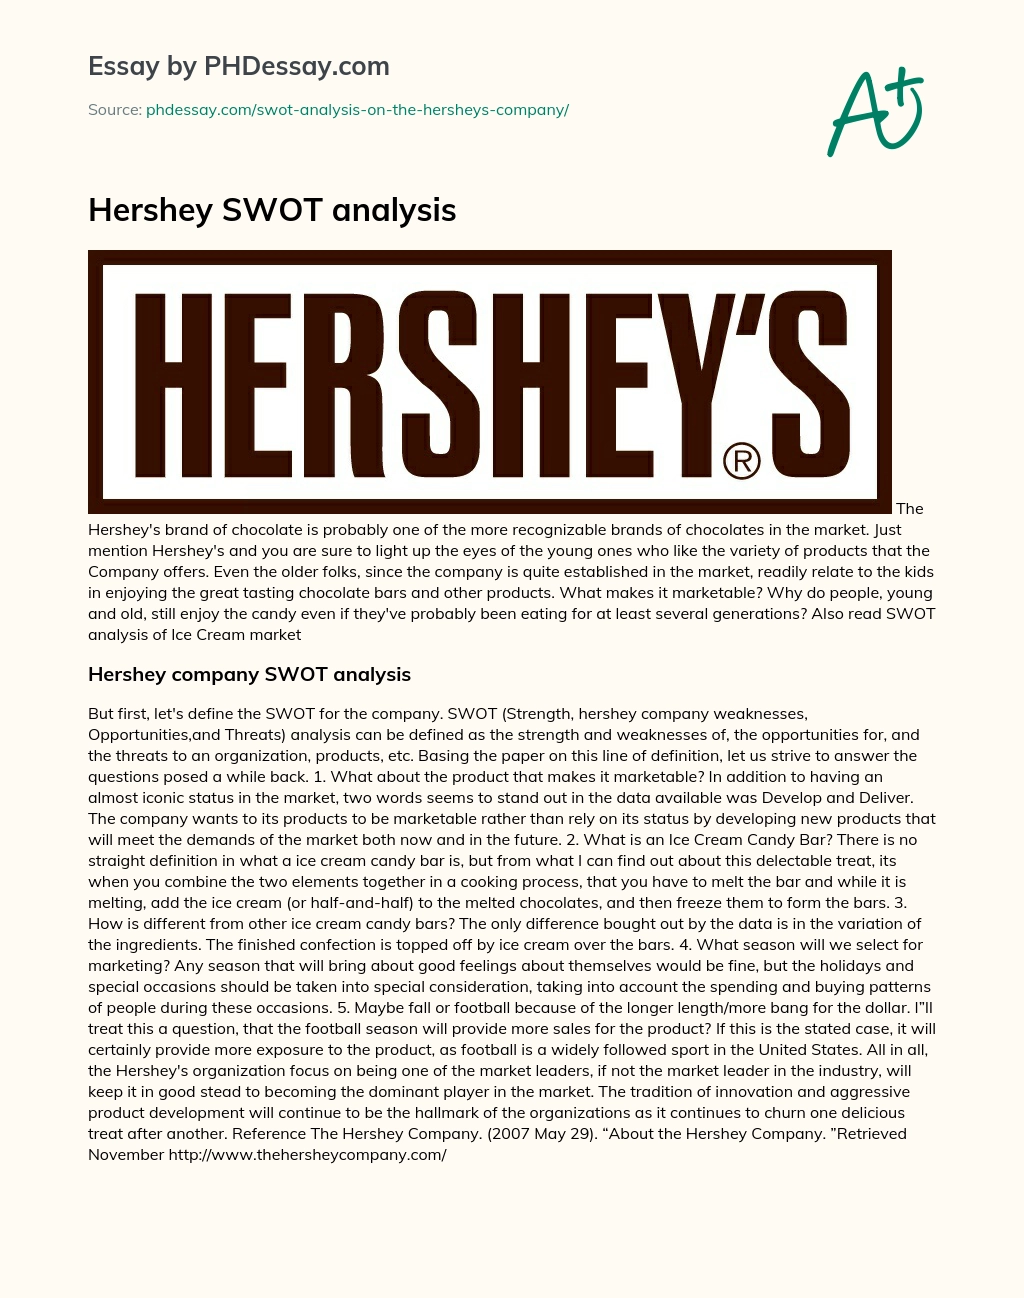 Hershey SWOT analysis essay